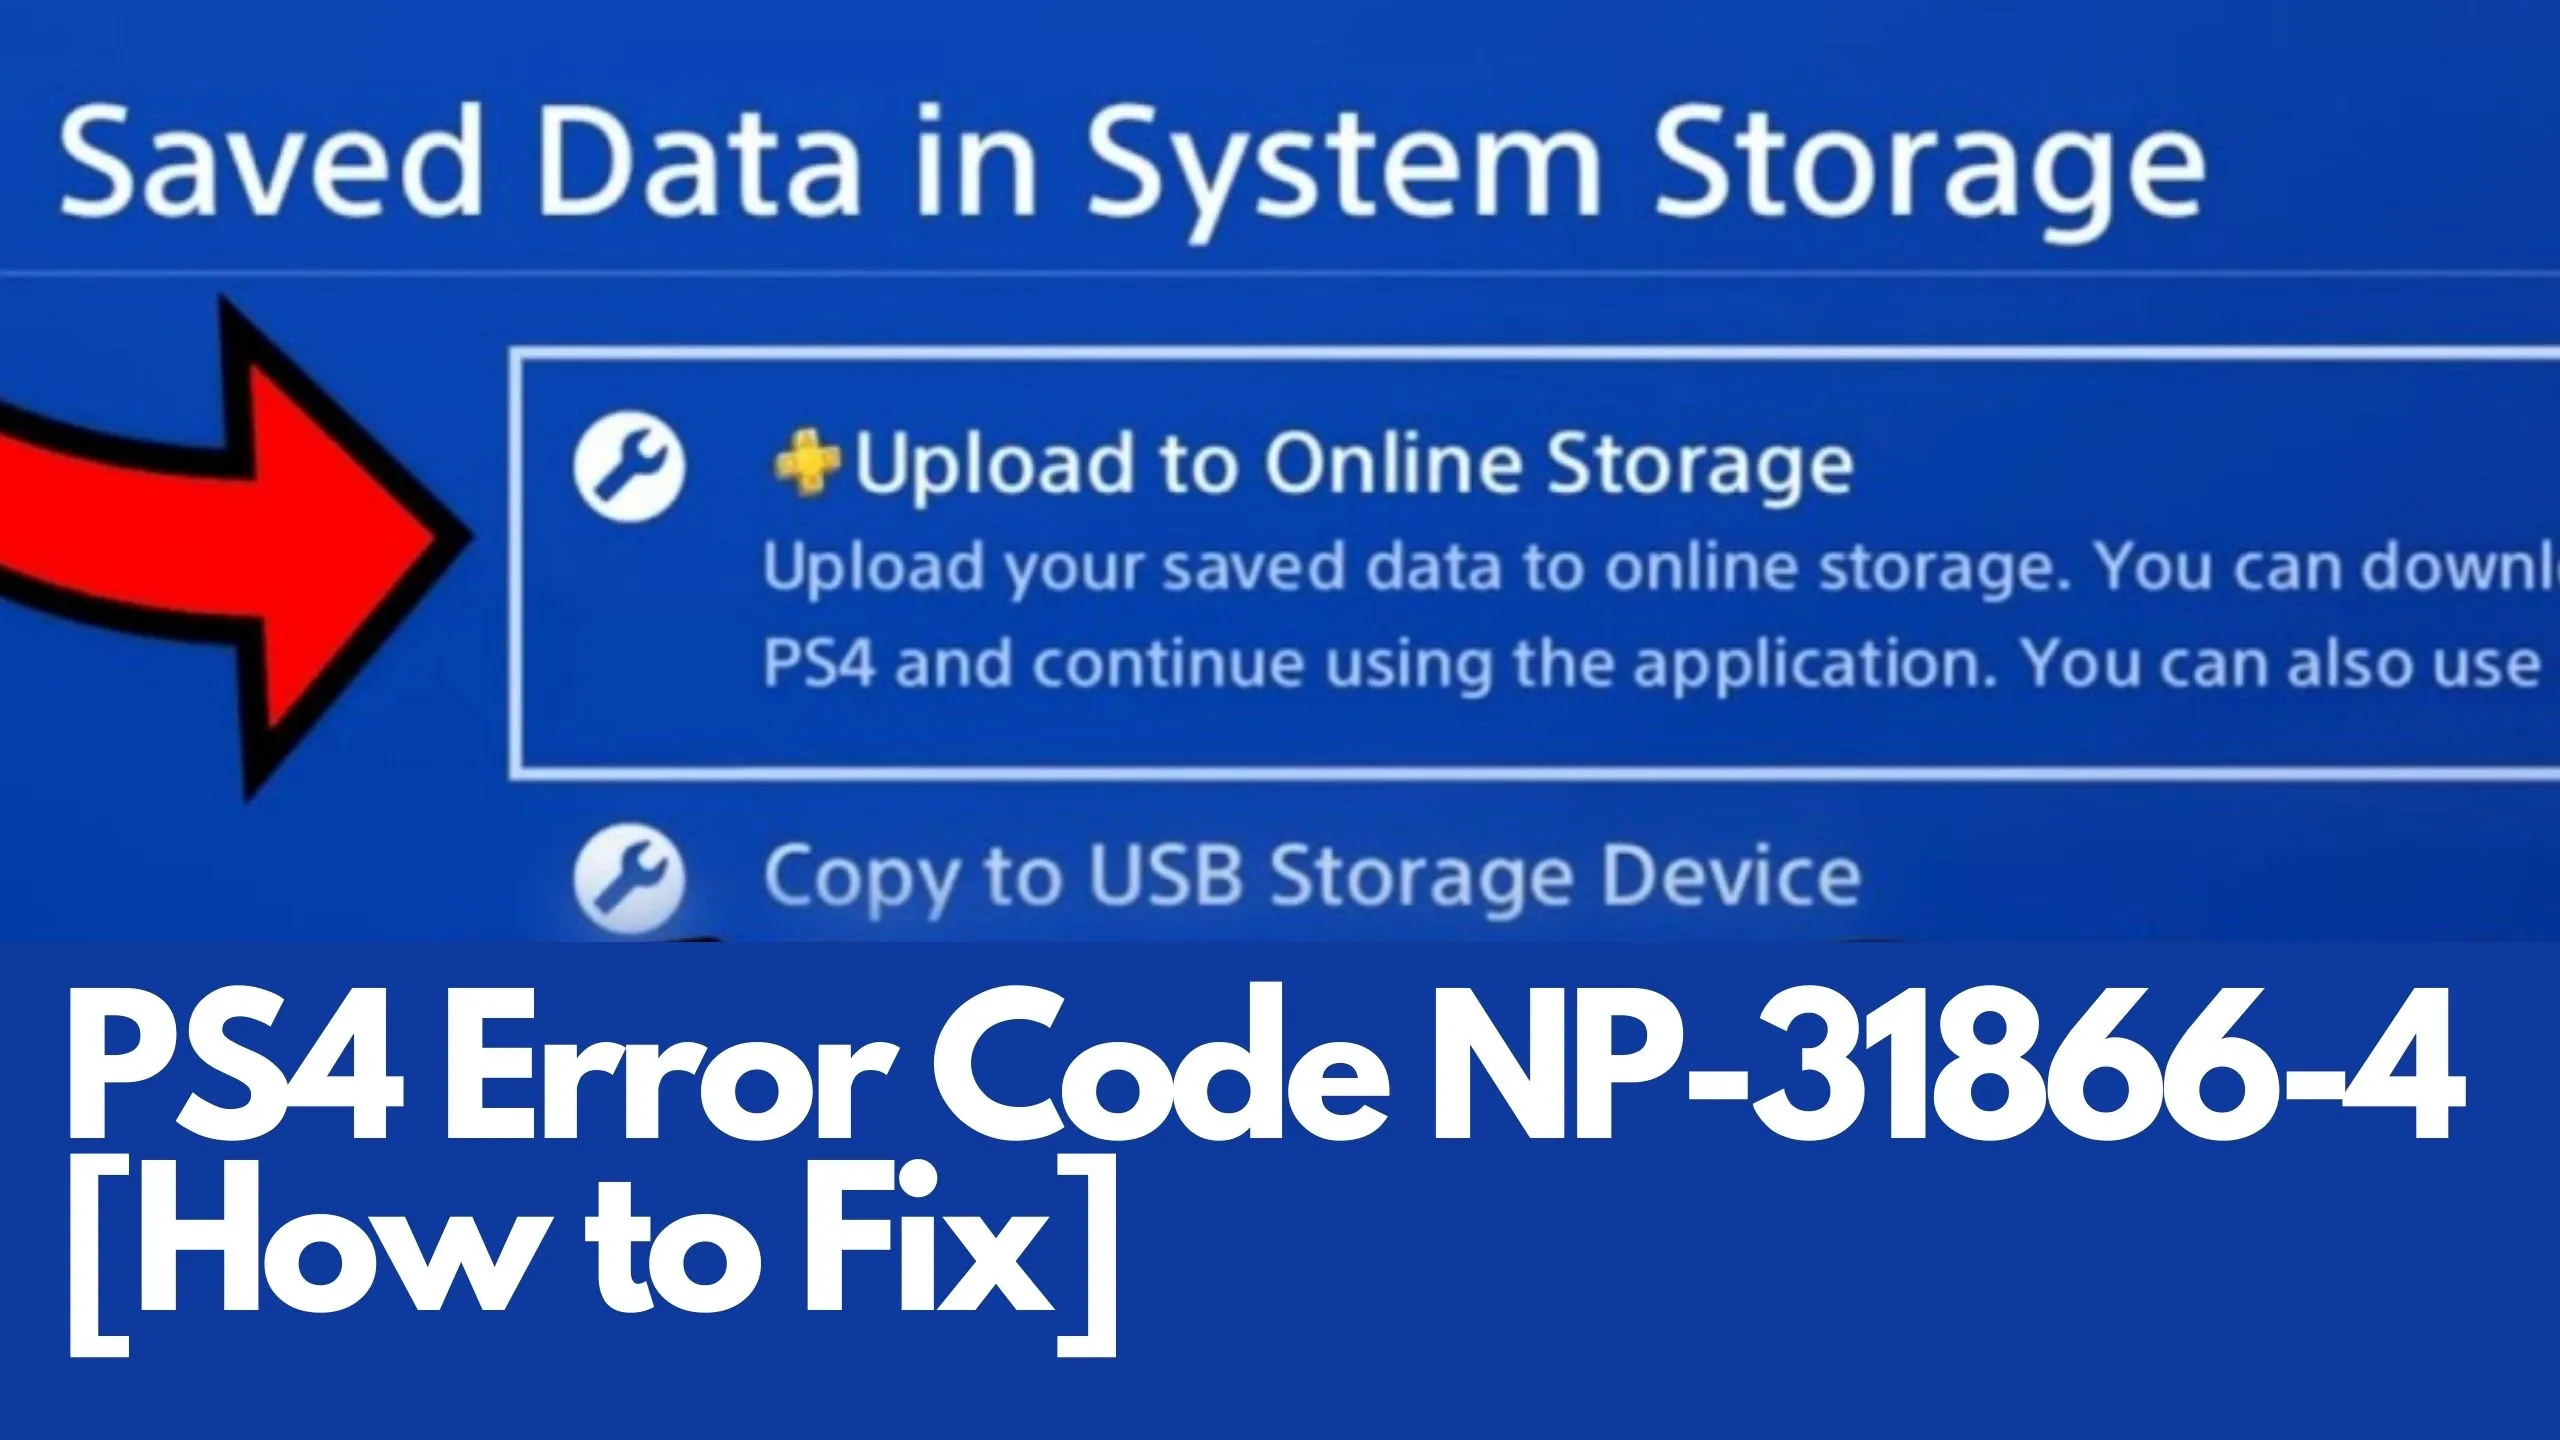 PS4-Error-Code-NP-31866-46-